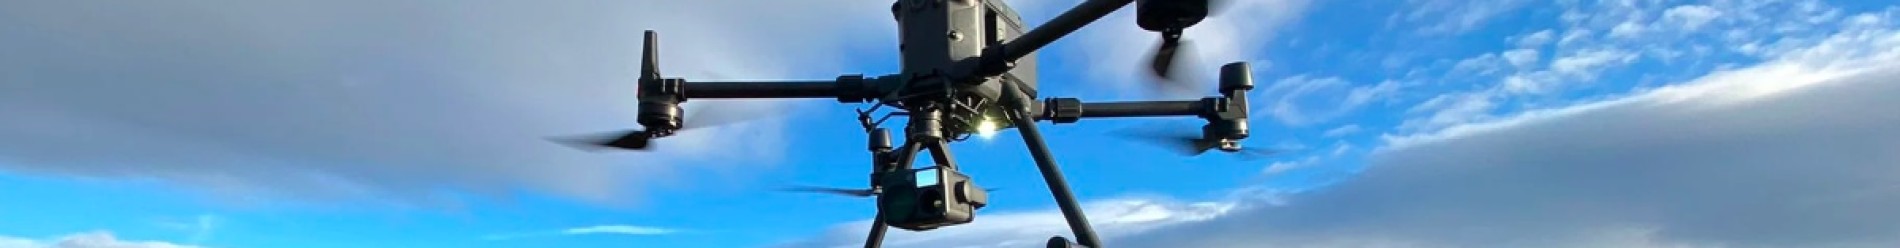 DJI M300 RTK Drone